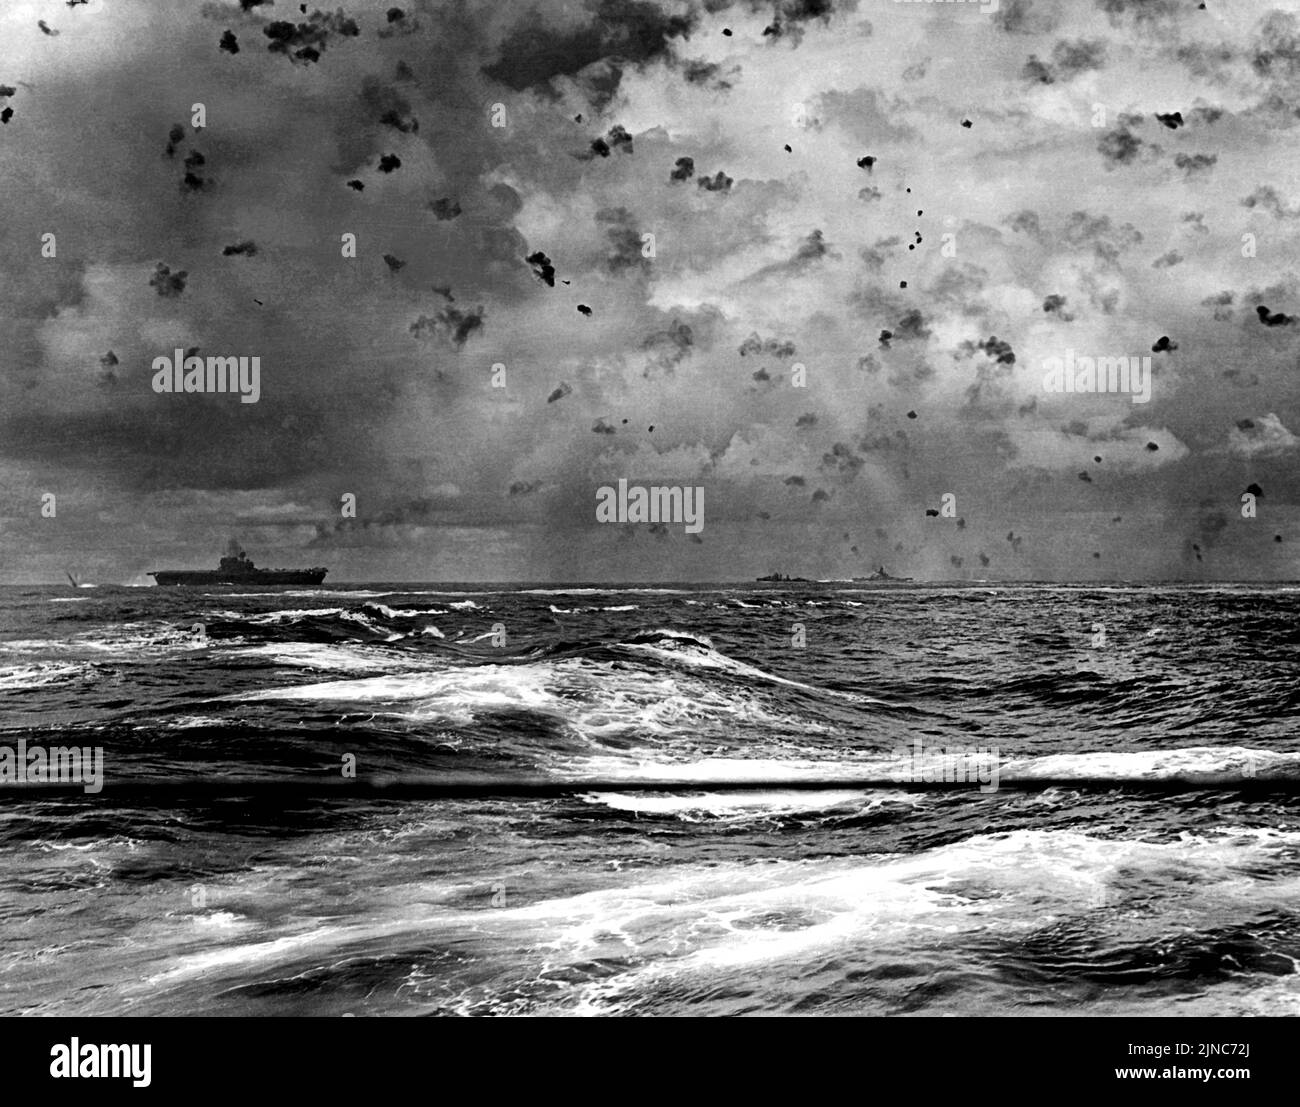 Dans une photo d'action dramatique le porte-avions USS Enterprise (CV-6) de la marine américaine et d'autres navires de son écran en action pendant la bataille de Santa Cruz, le 26 octobre 1942. Une bombe explose au-dessus de sa poupe, tandis que deux bombardiers japonais sont visibles directement au-dessus de la porteuse et vers le centre de l'image. Banque D'Images